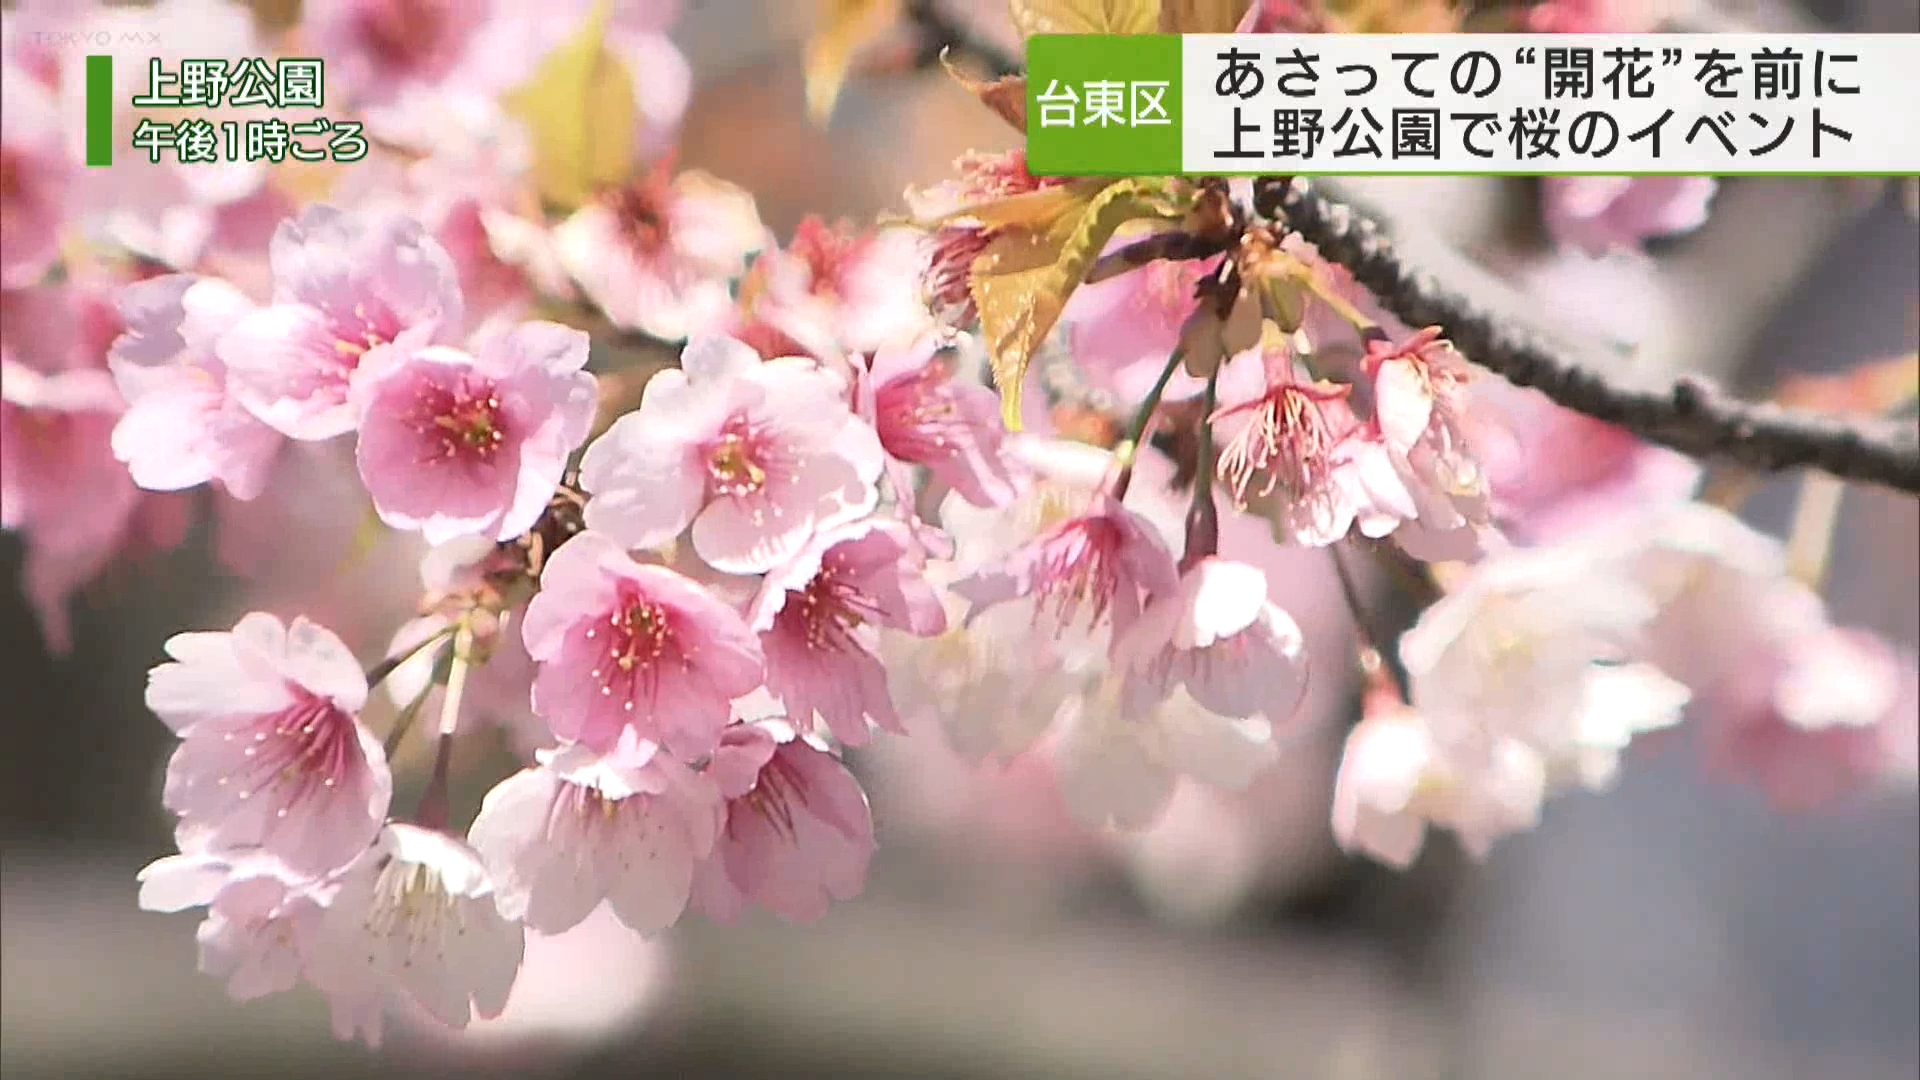 上野公園で開花より一足早く桜のイベント